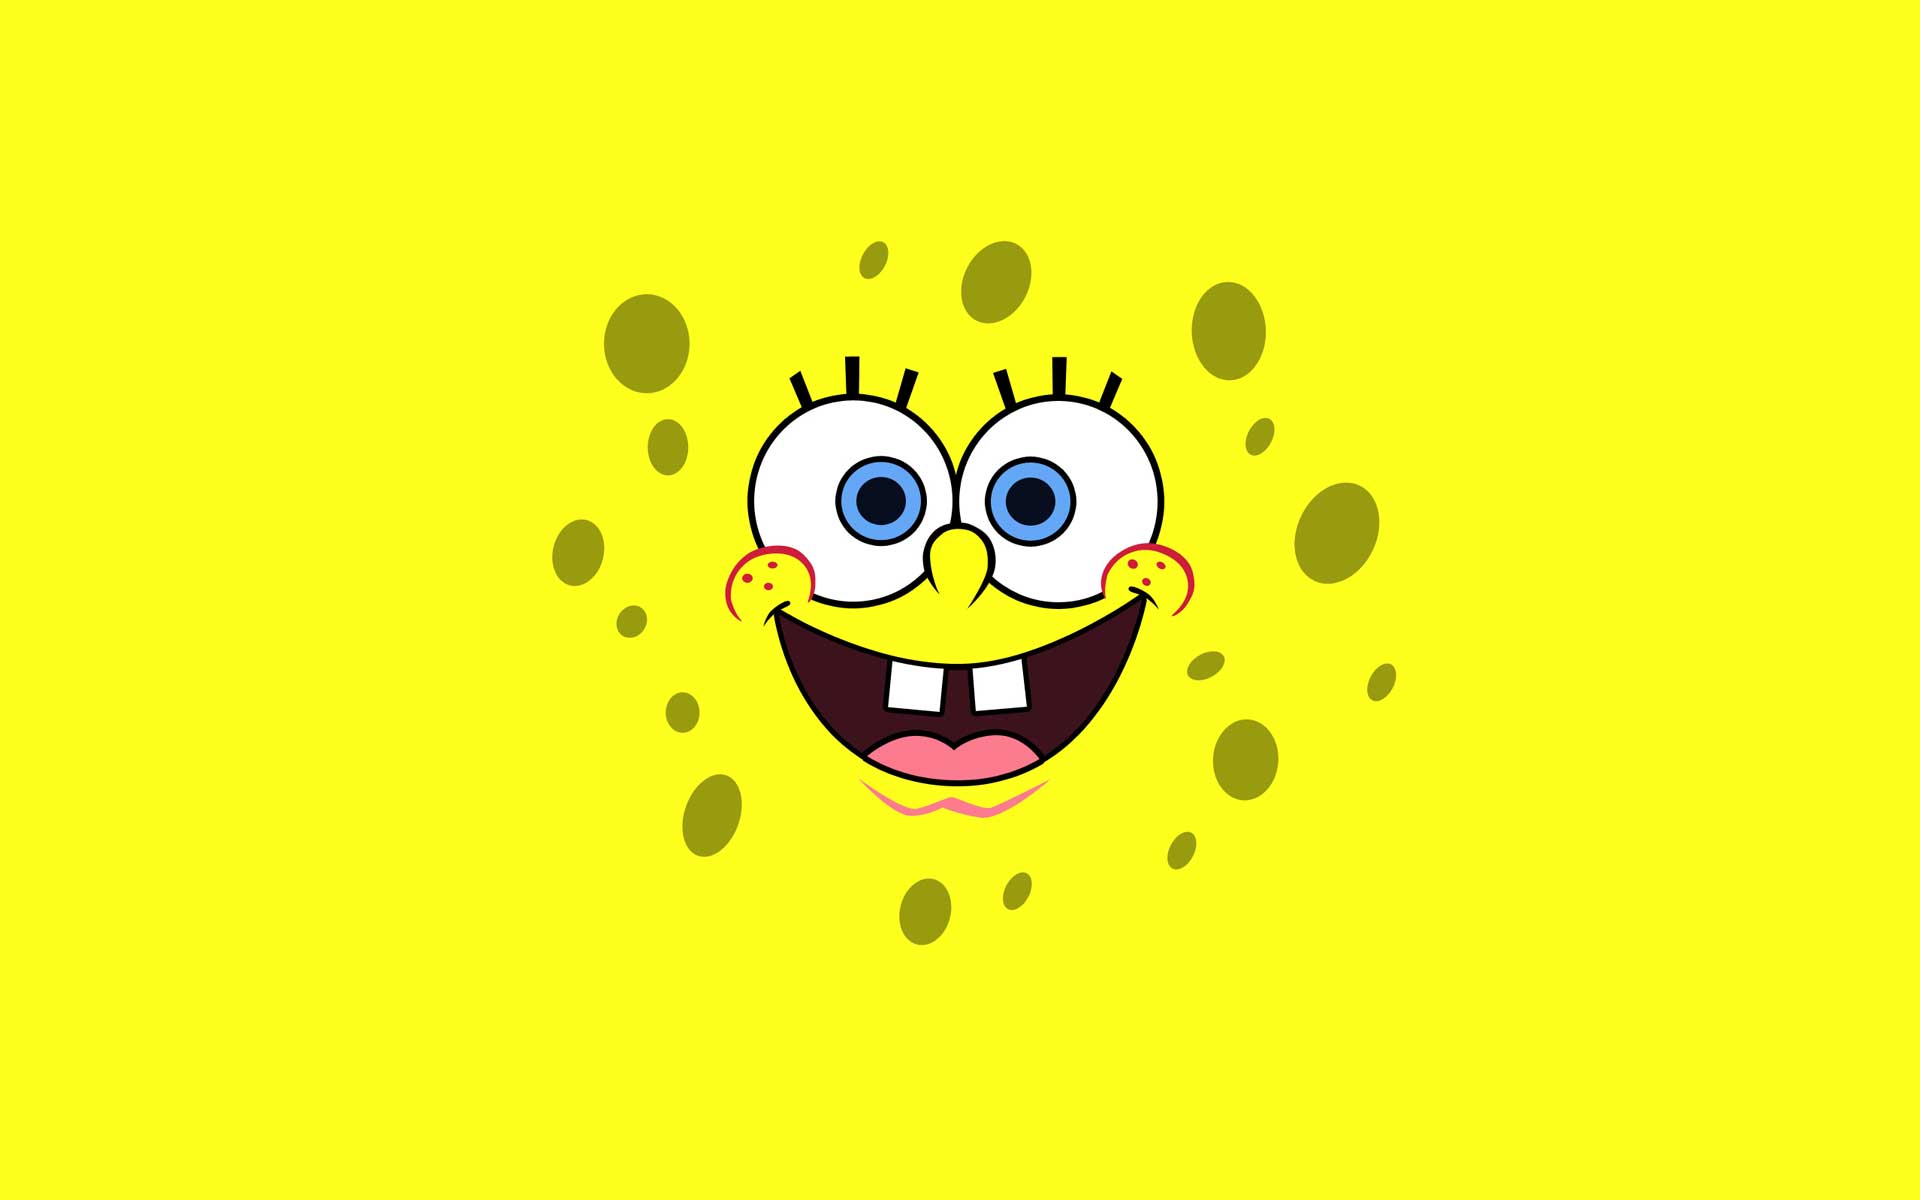 Spongebob Design Wallpaper Ics Desktop Background Cartoon